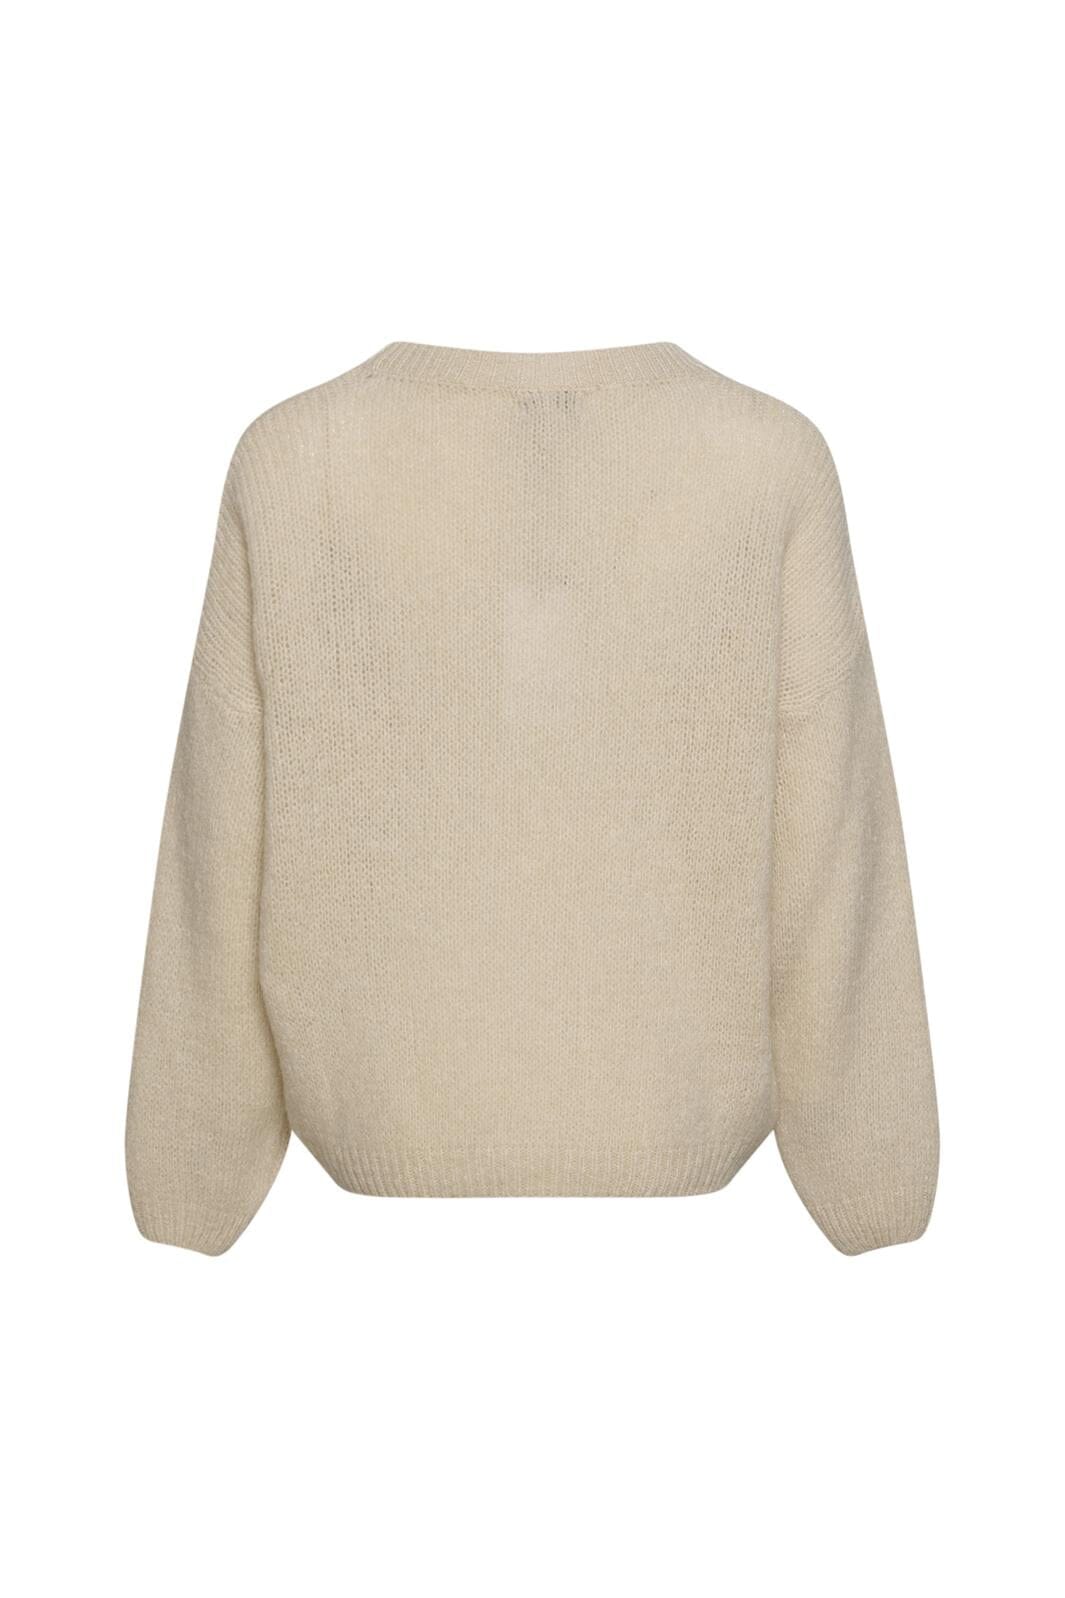 Noella - Renn Knit Sweater - 021 Sand